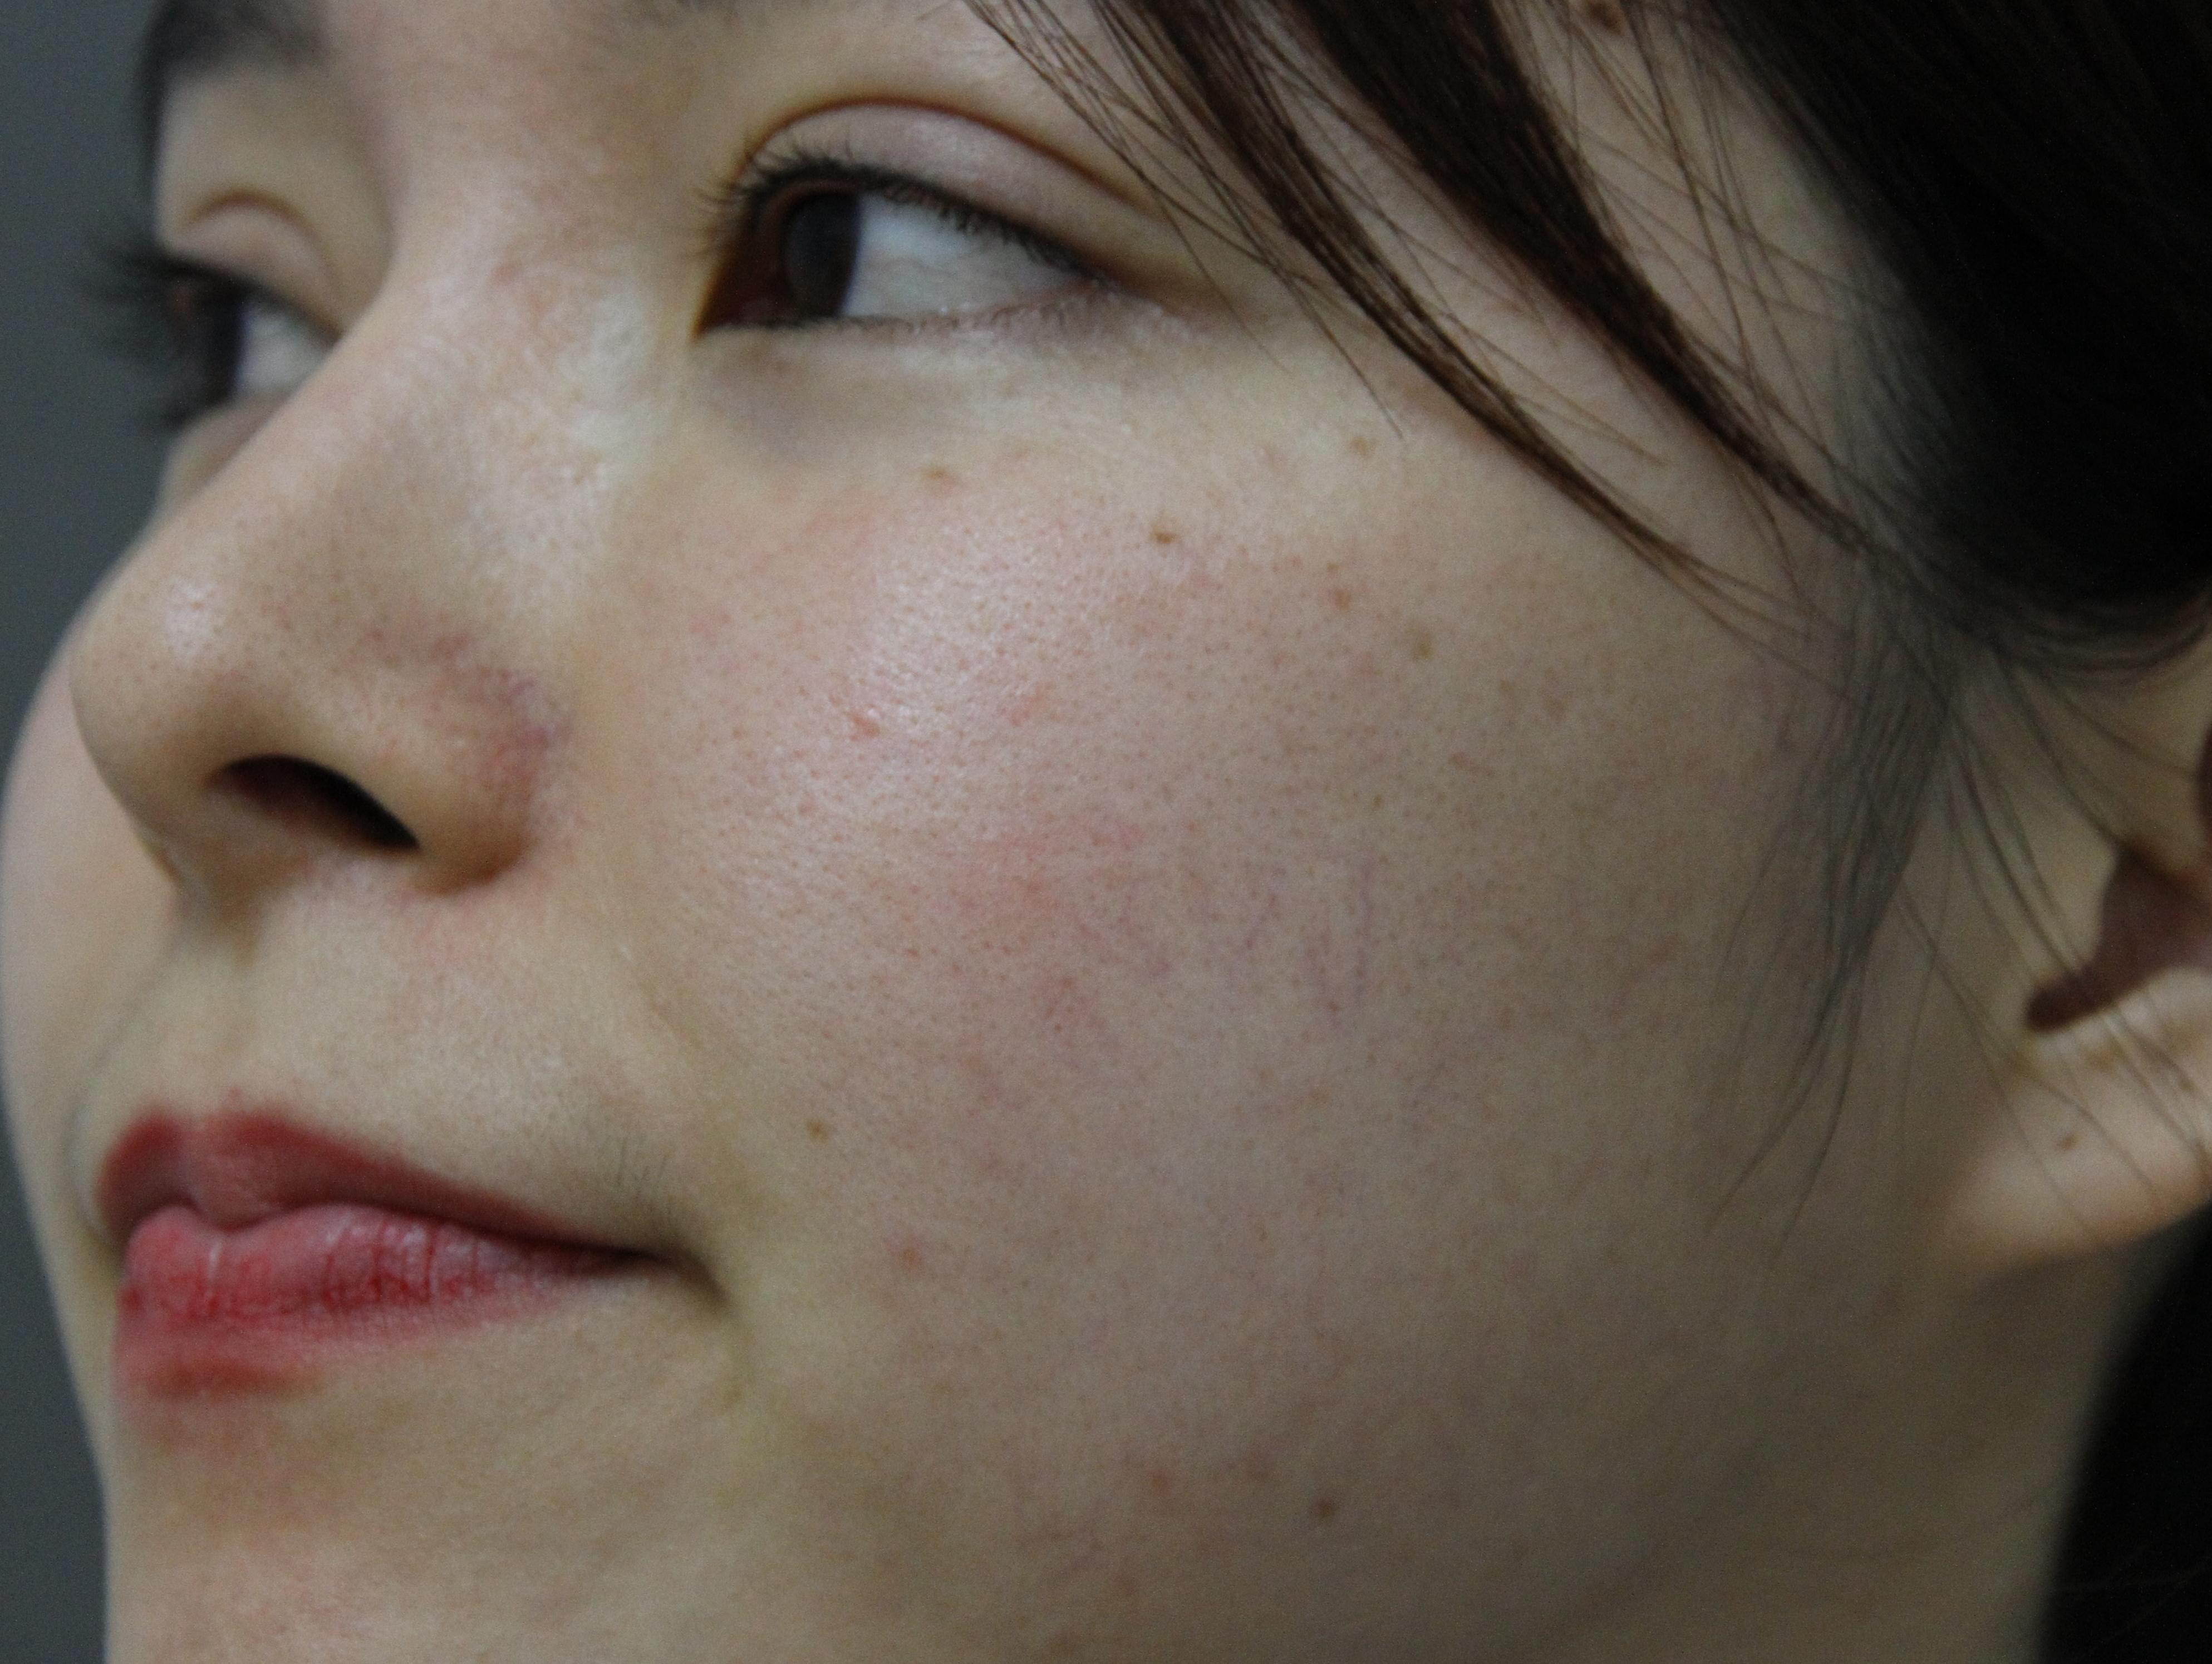 脸上有红血丝、皮肤容易过敏、有什么护肤品可以推荐吗？ - 知乎